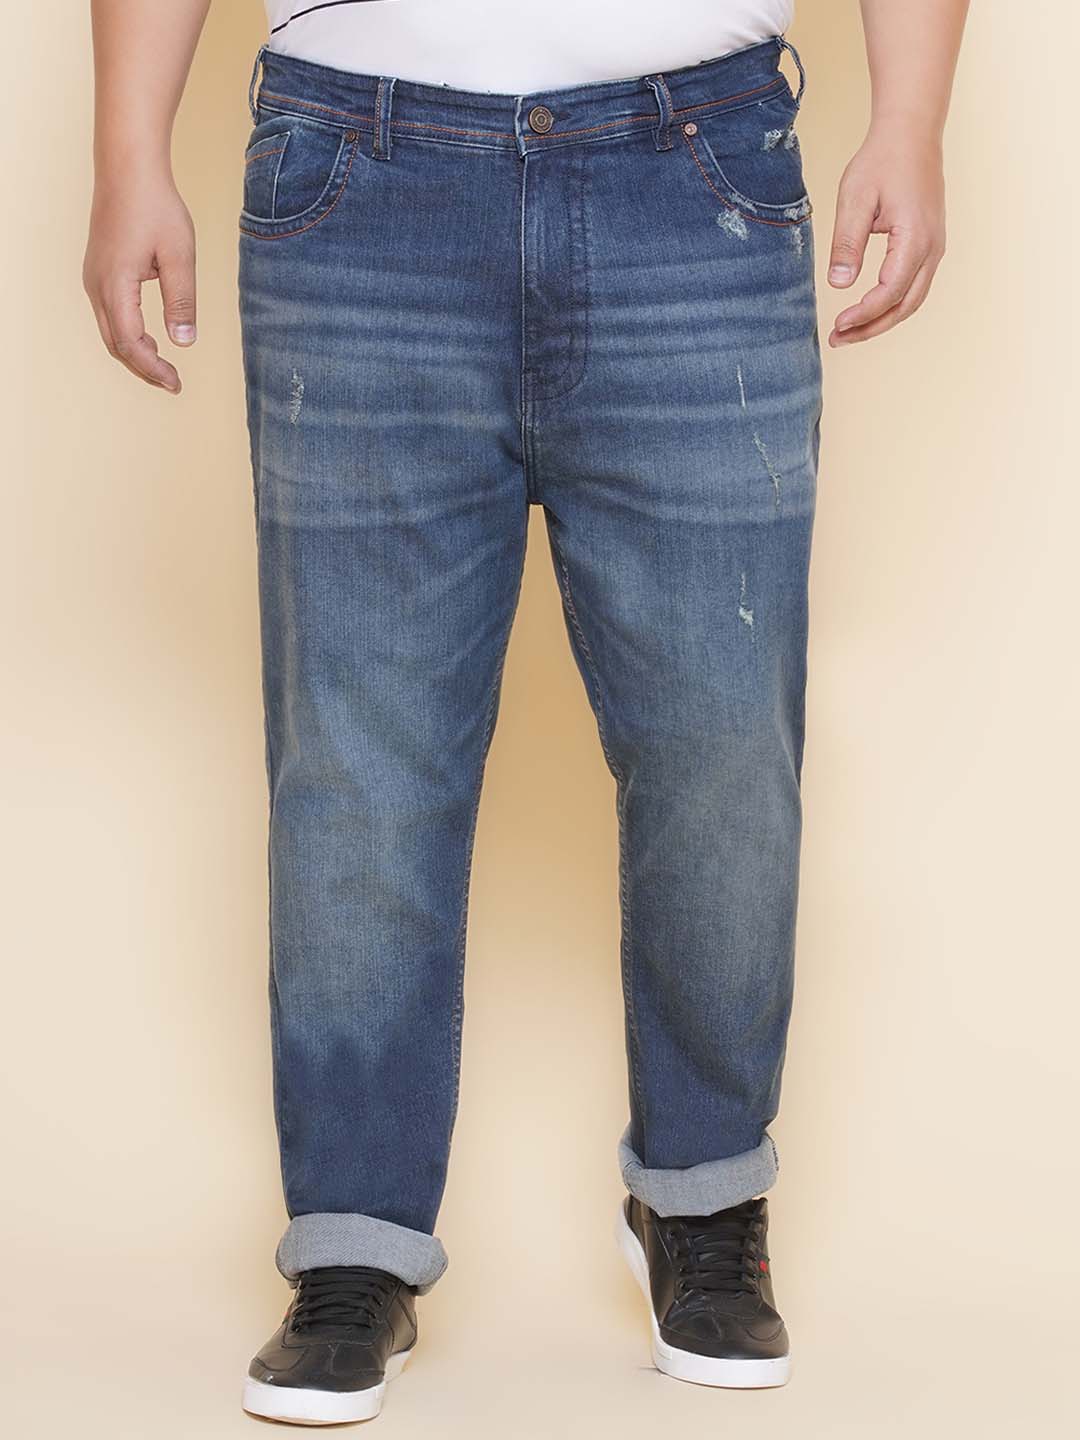 bottomwear/jeans/EJPJ25138/ejpj25138-1.jpg